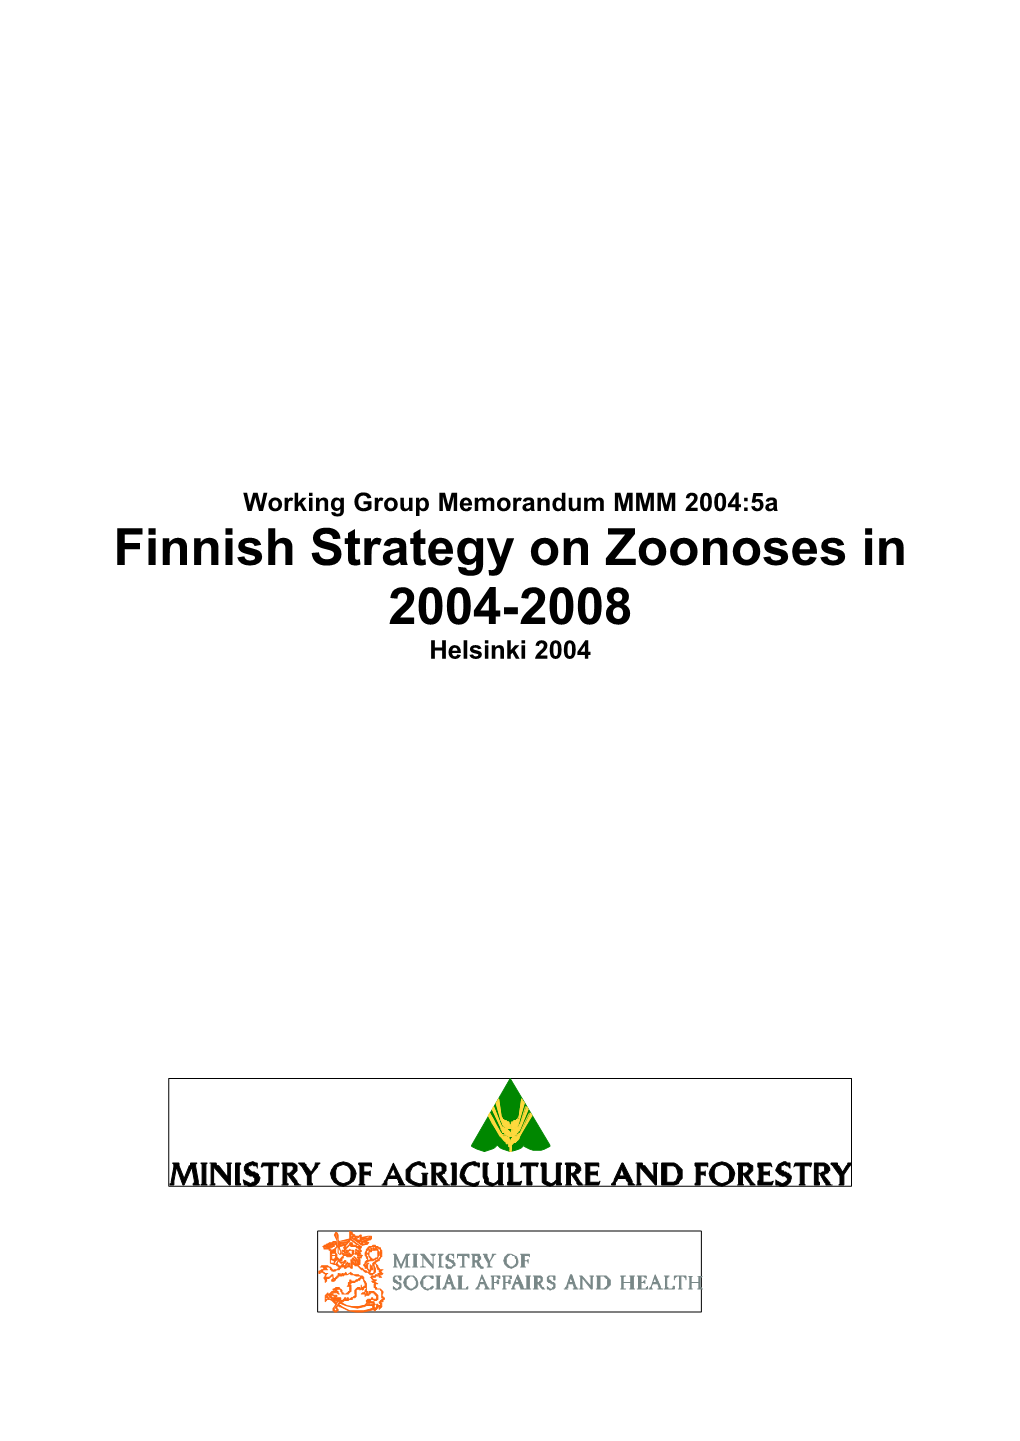 Finnish Strategy on Zoonoses in 2004-2008 Helsinki 2004